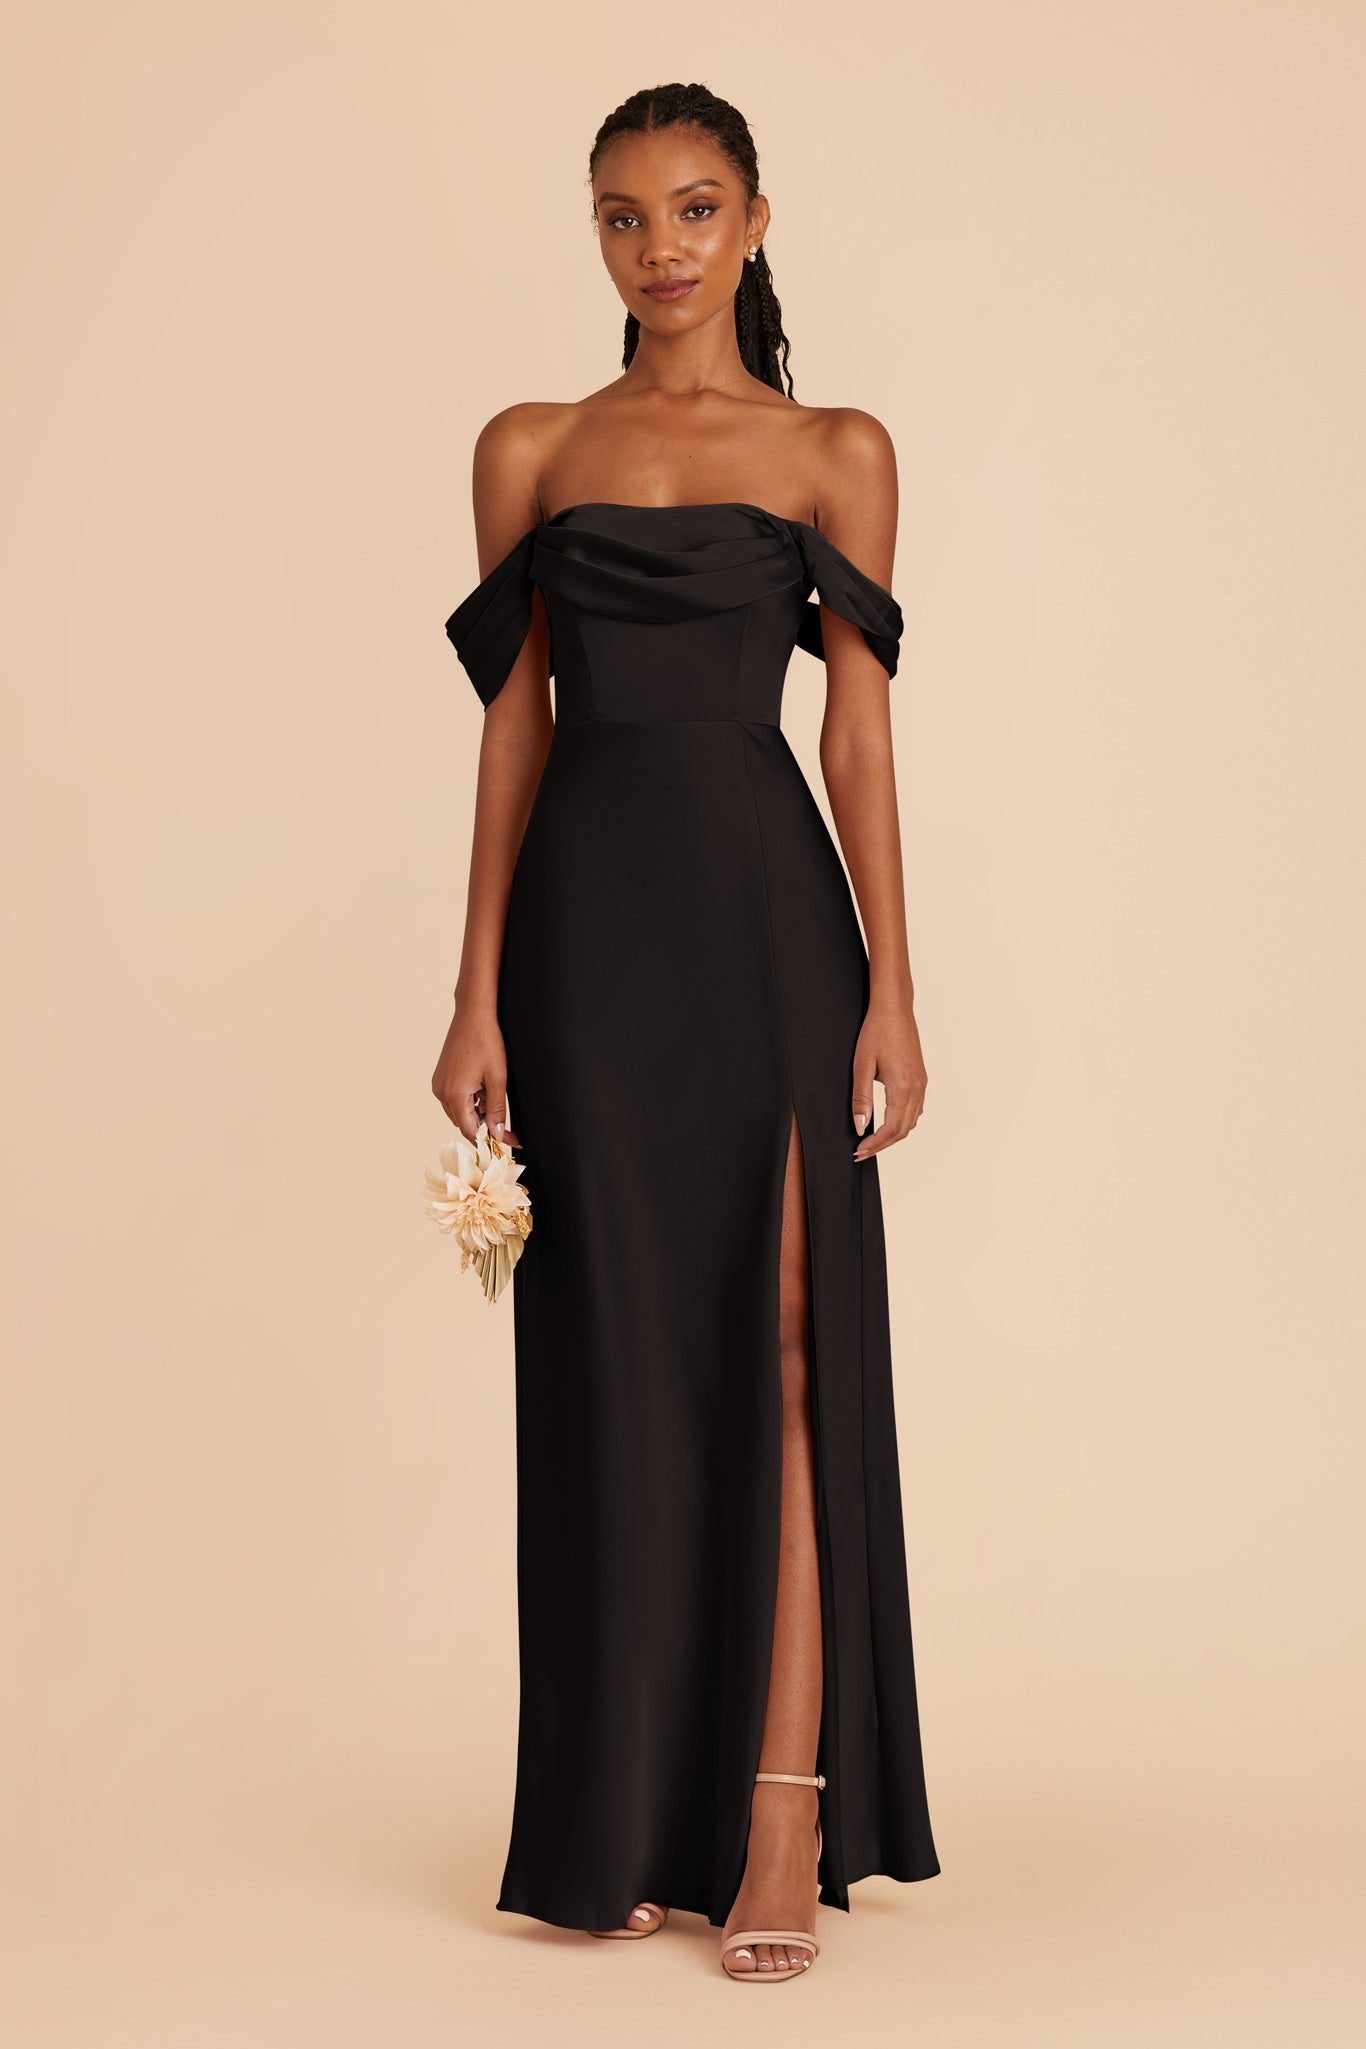 Black Mia Matte Satin Dress by Birdy Grey